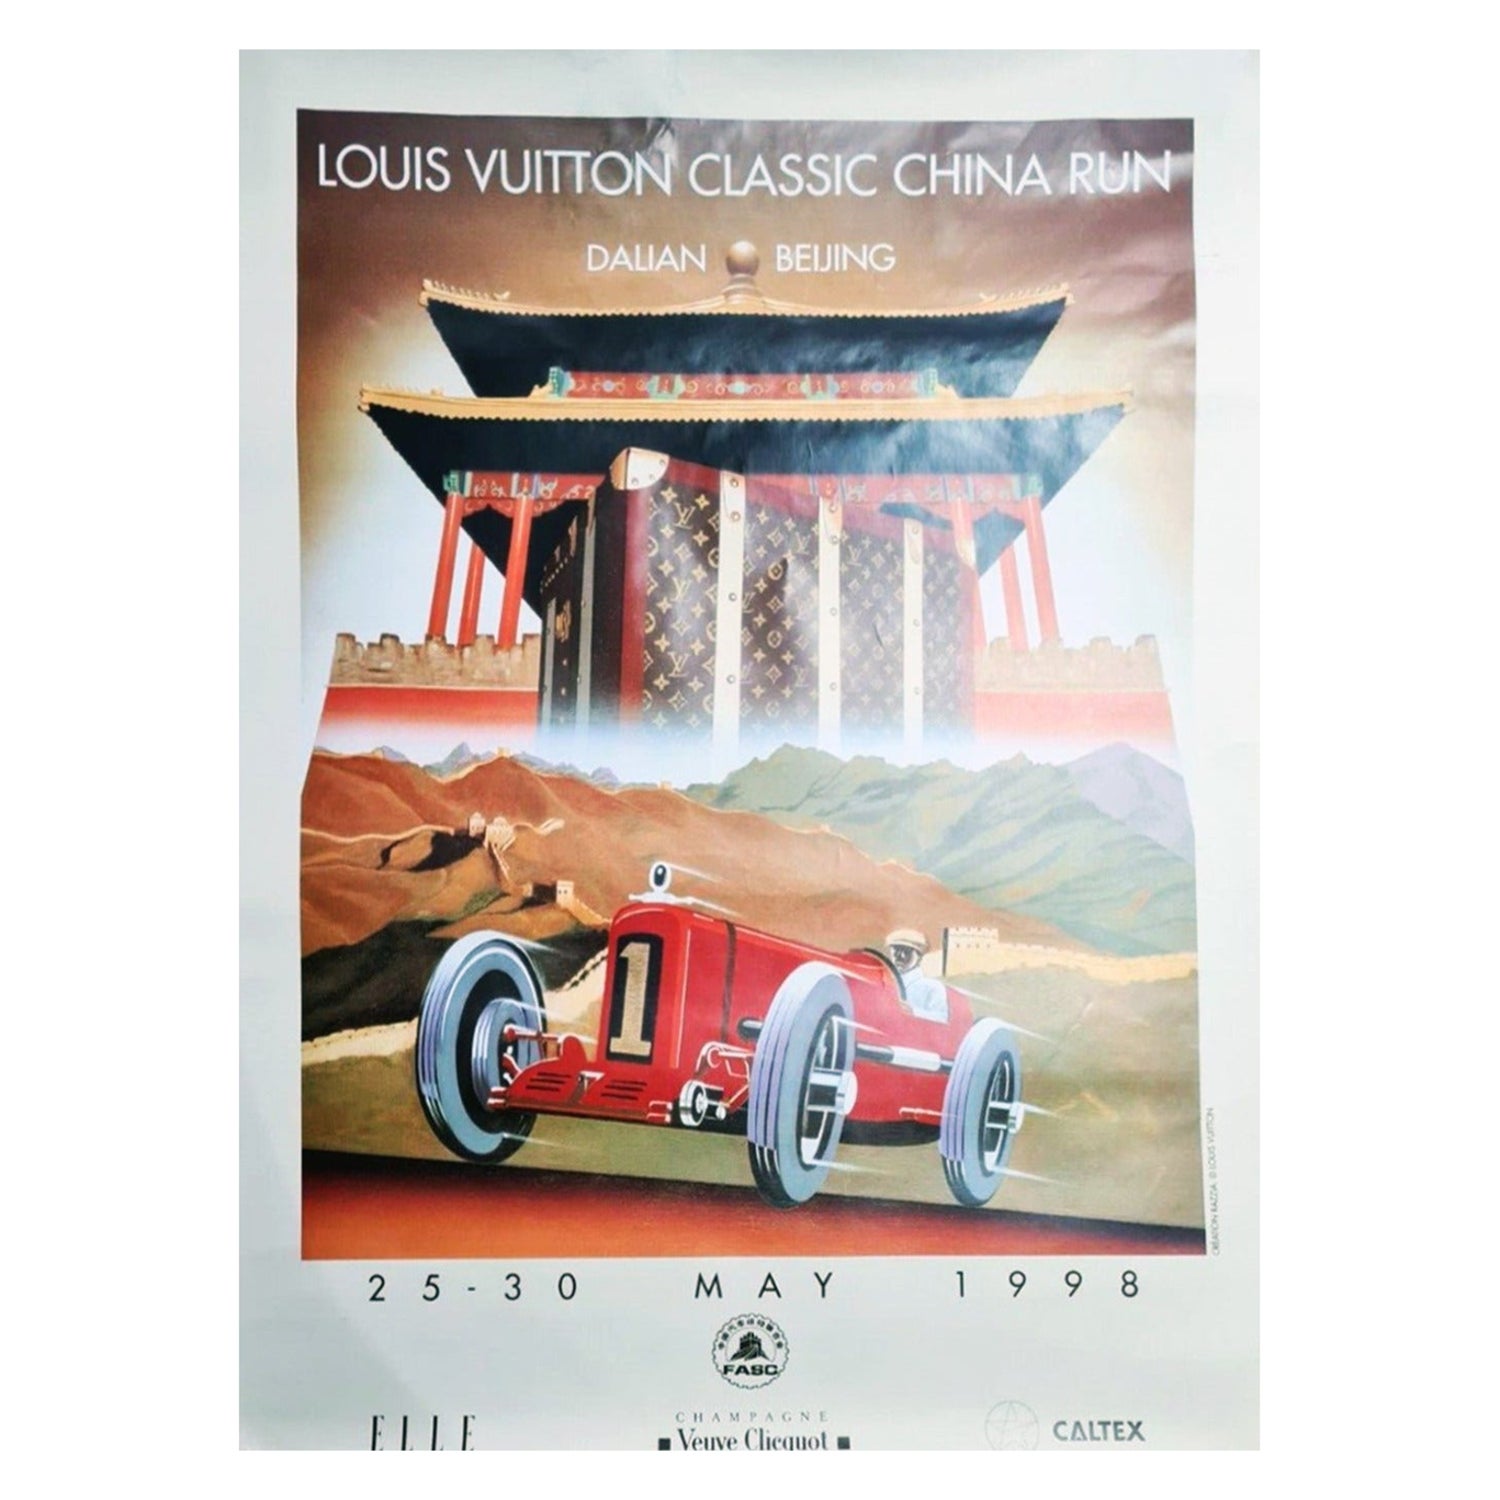 Louis Vuitton Cup 2002/03 large original poster by RazziaTemporarily O -  l'art et l'automobile